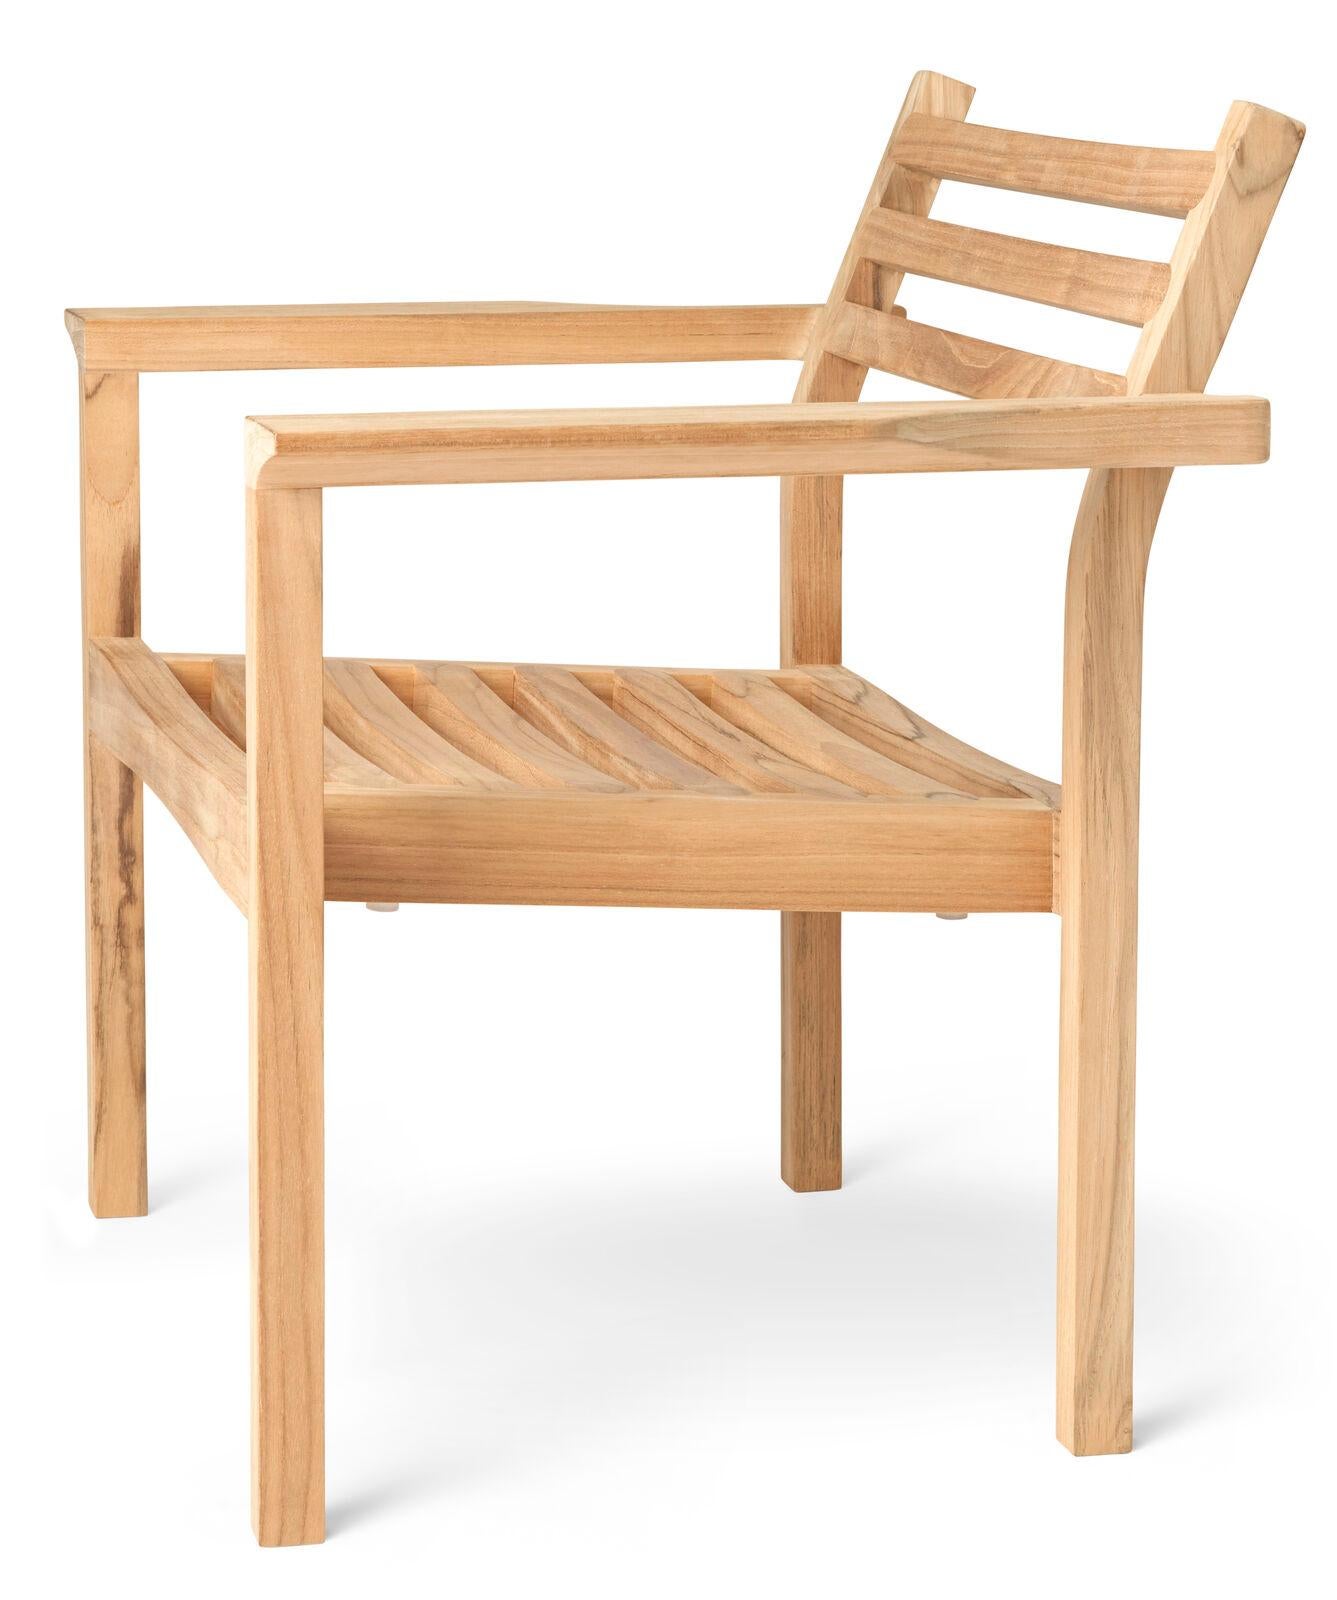 Der AH601 Outdoor Lounge Stuhl wurde von Alfred Homann im Jahr 2022 als Teil der AH Outdoor Serie entworfen. Wie die übrigen Außenmöbel der Serie zeichnet sich auch der Loungesessel durch strenge Linien aus, die elegant mit weichen, abgerundeten